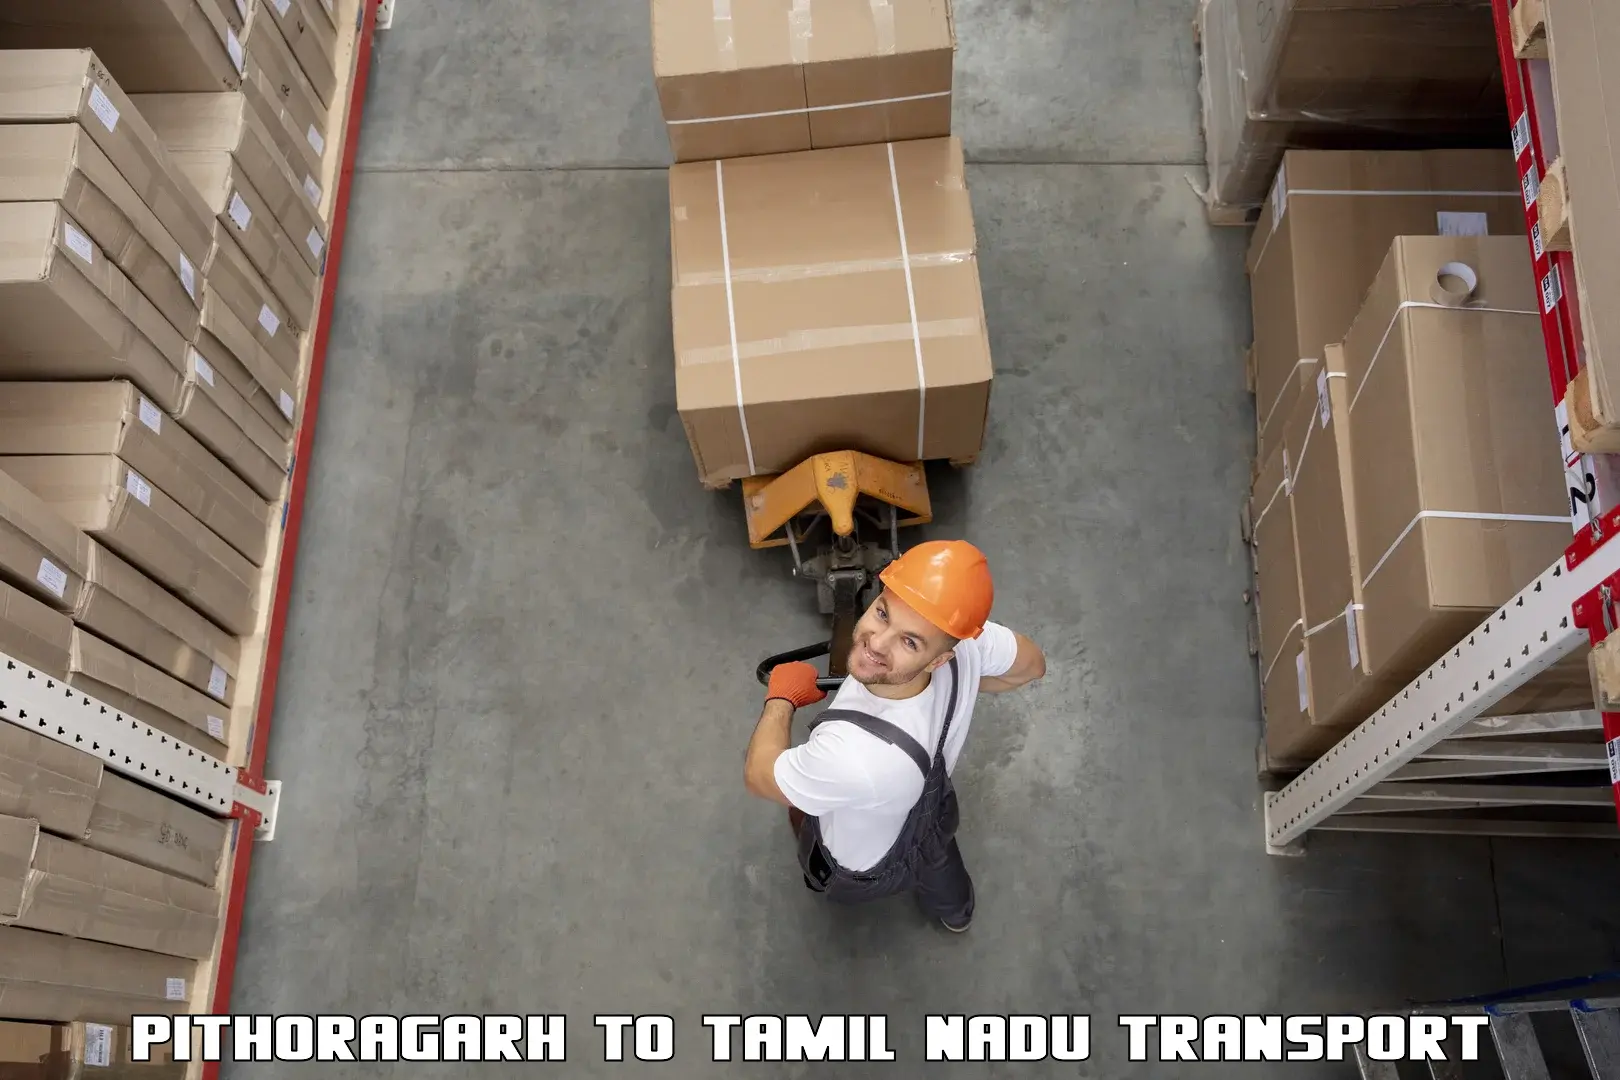 Part load transport service in India Pithoragarh to Paramakudi